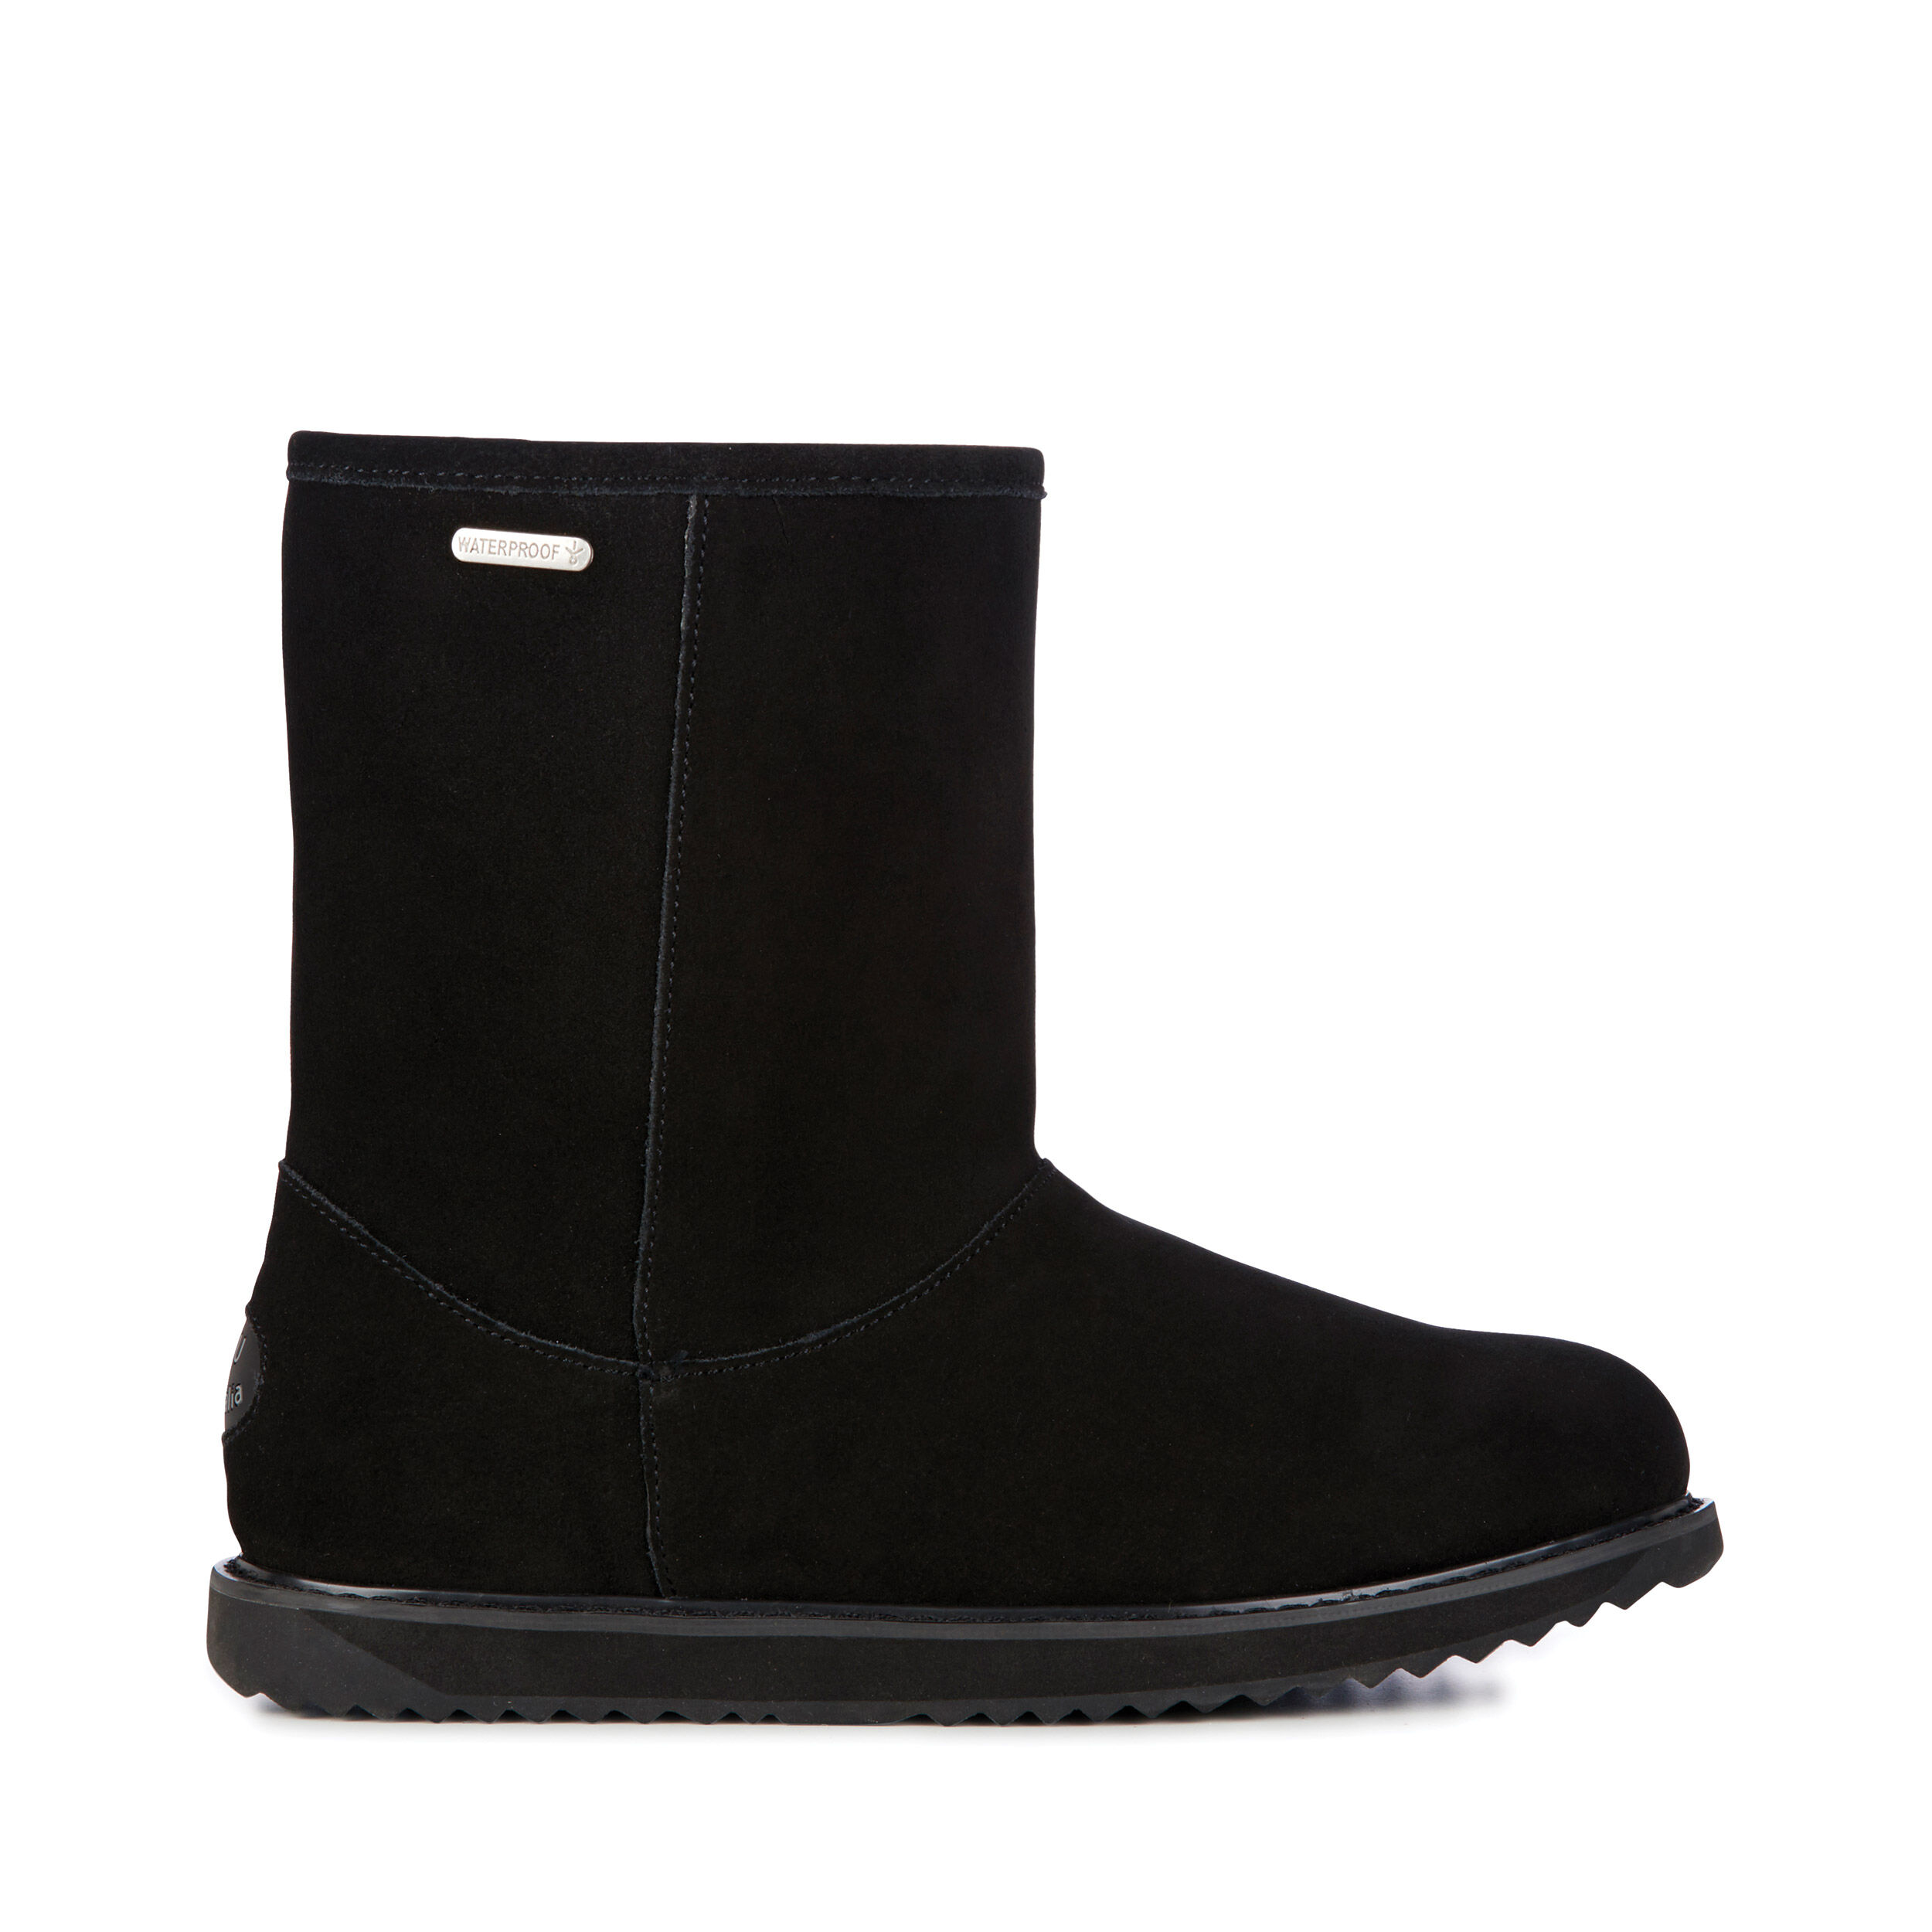 Waterproof Sheepskin Boots for Women 